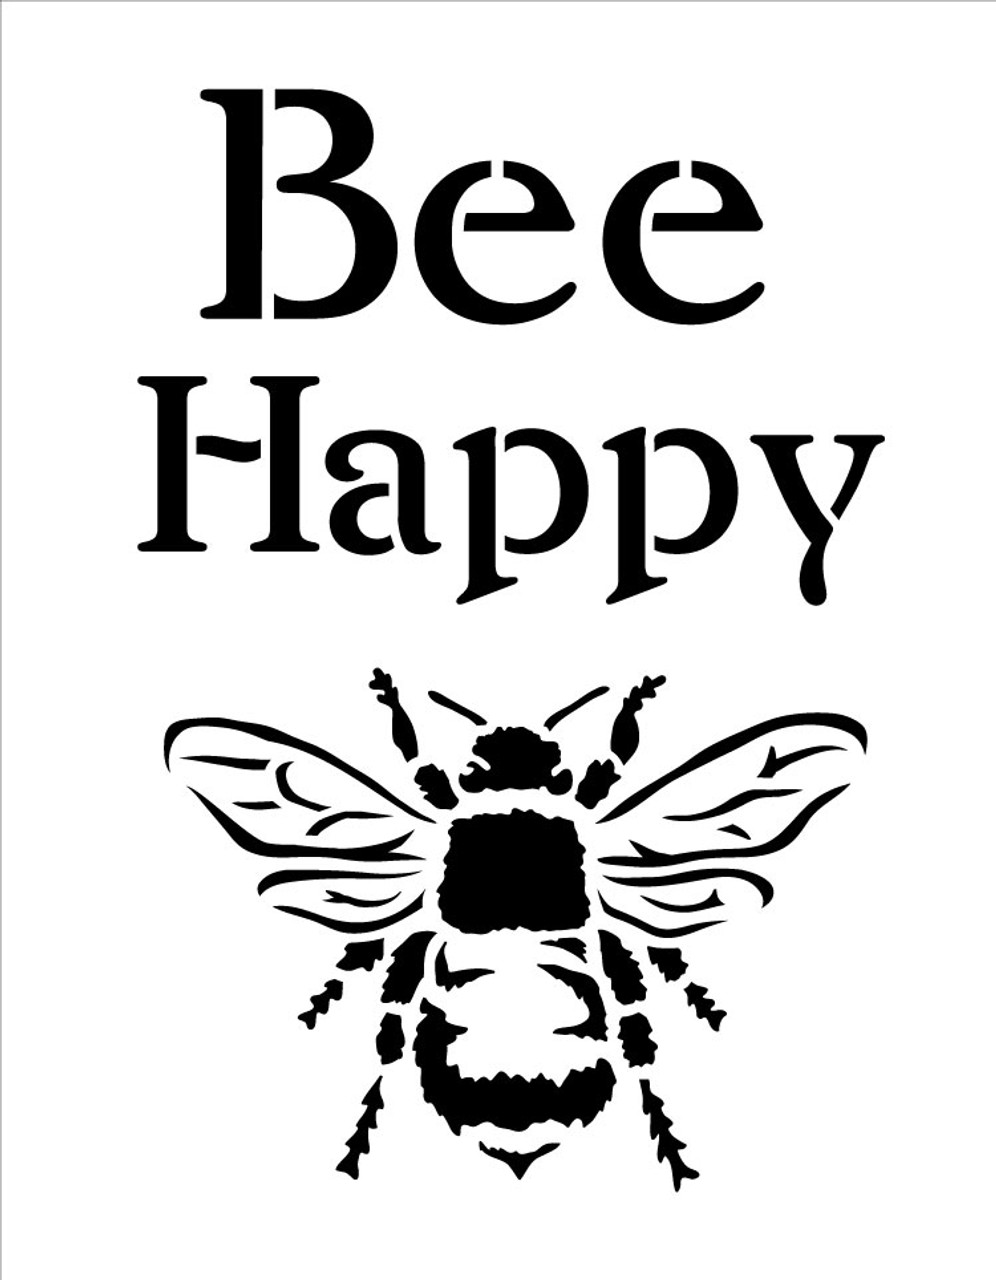 Bee Happy - Word Art Stencil - 10.5" x 13.5" - STCL1171_2